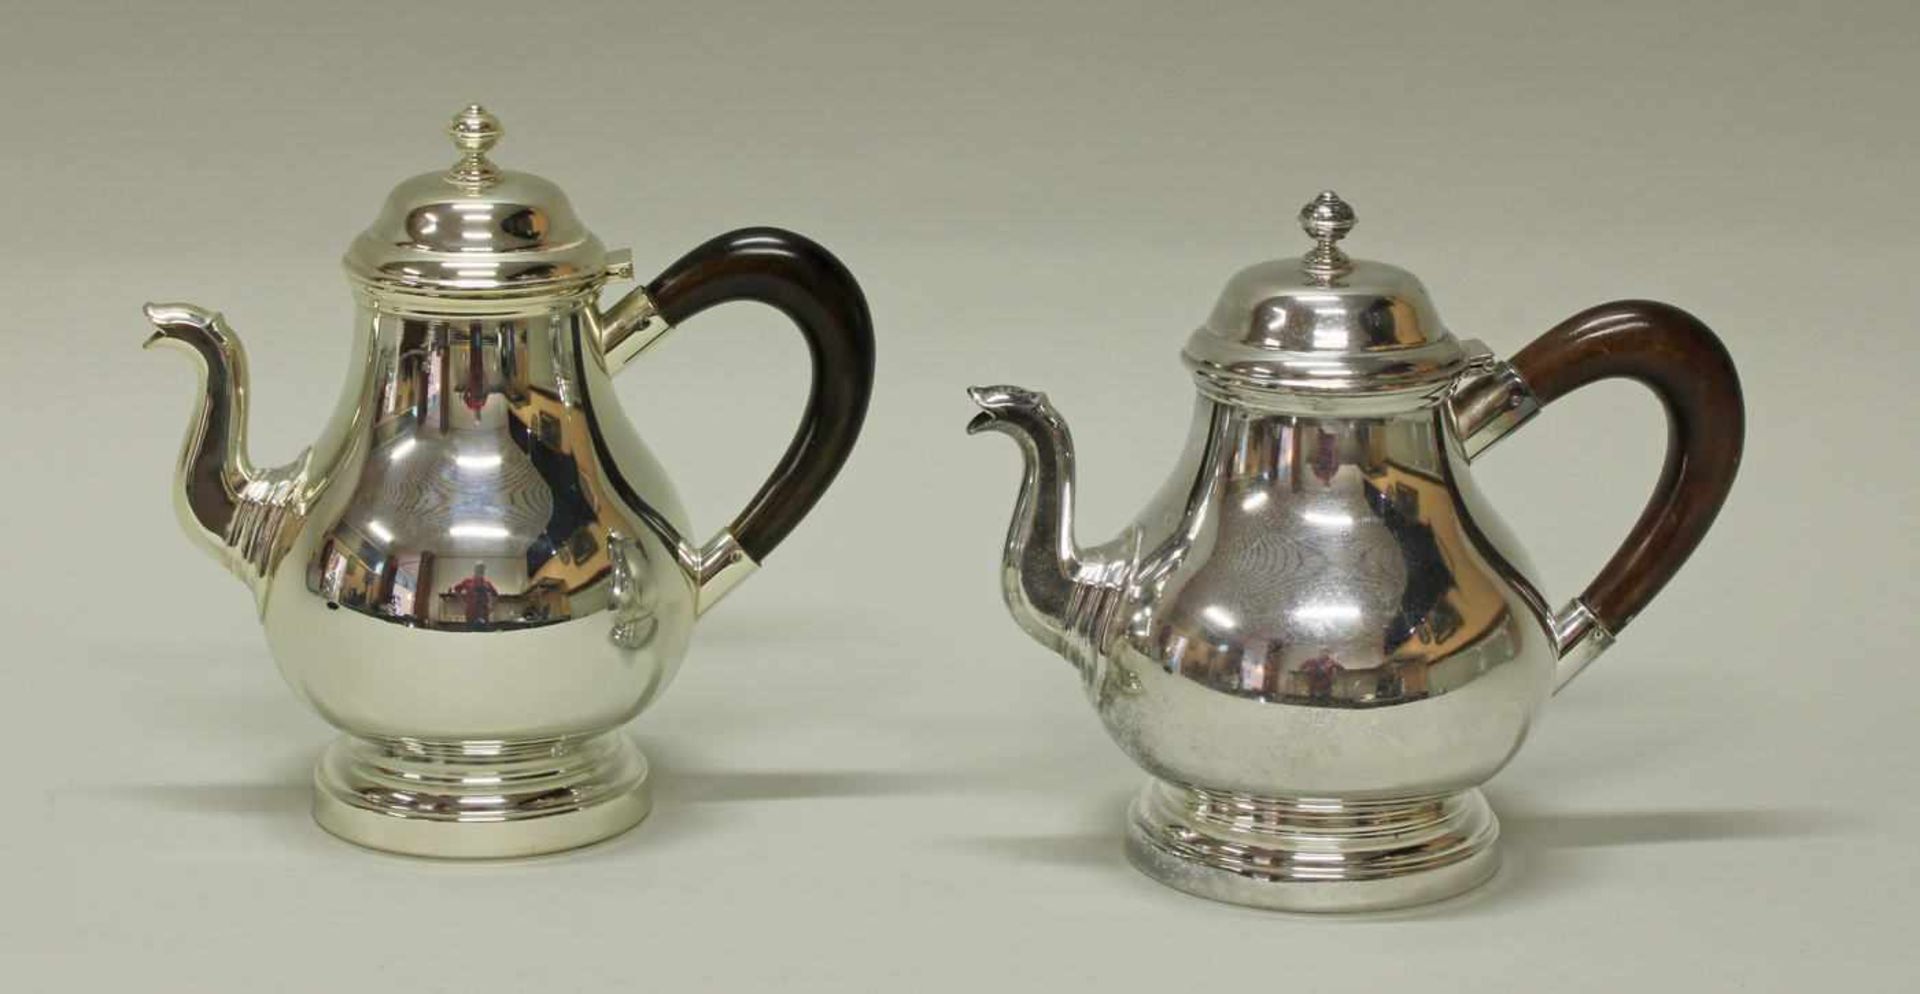 Teekanne, Kaffeekanne, Silber 800, Italien, gebaucht, Holzhenkel, 1x am Boden umseitig datierte